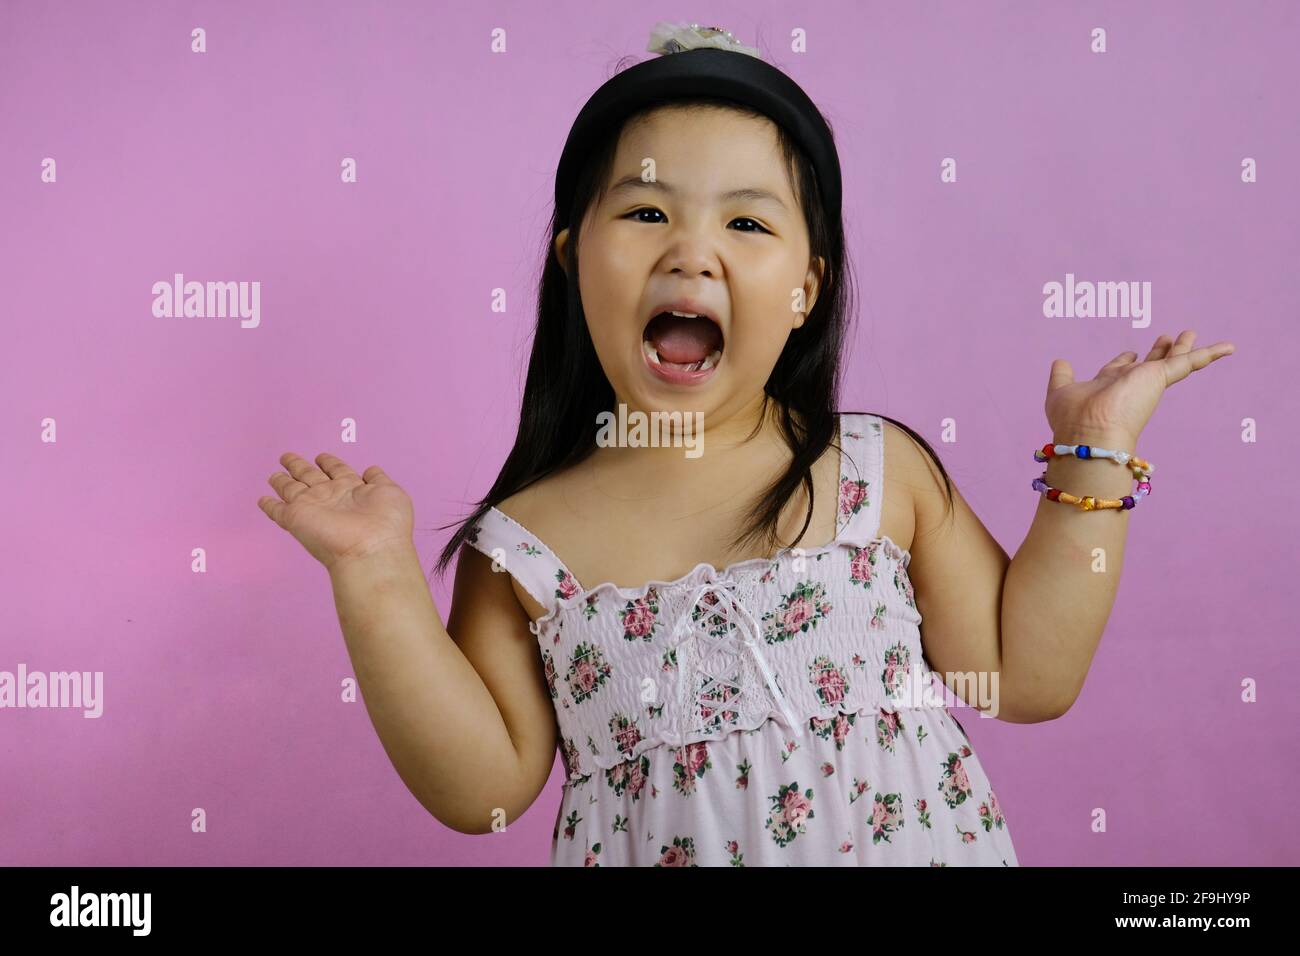 Una ragazza giovane e carina asiatica si sente eccitata, urlando, con la bocca aperta e le mani sollevate, con sfondo rosa. Foto Stock